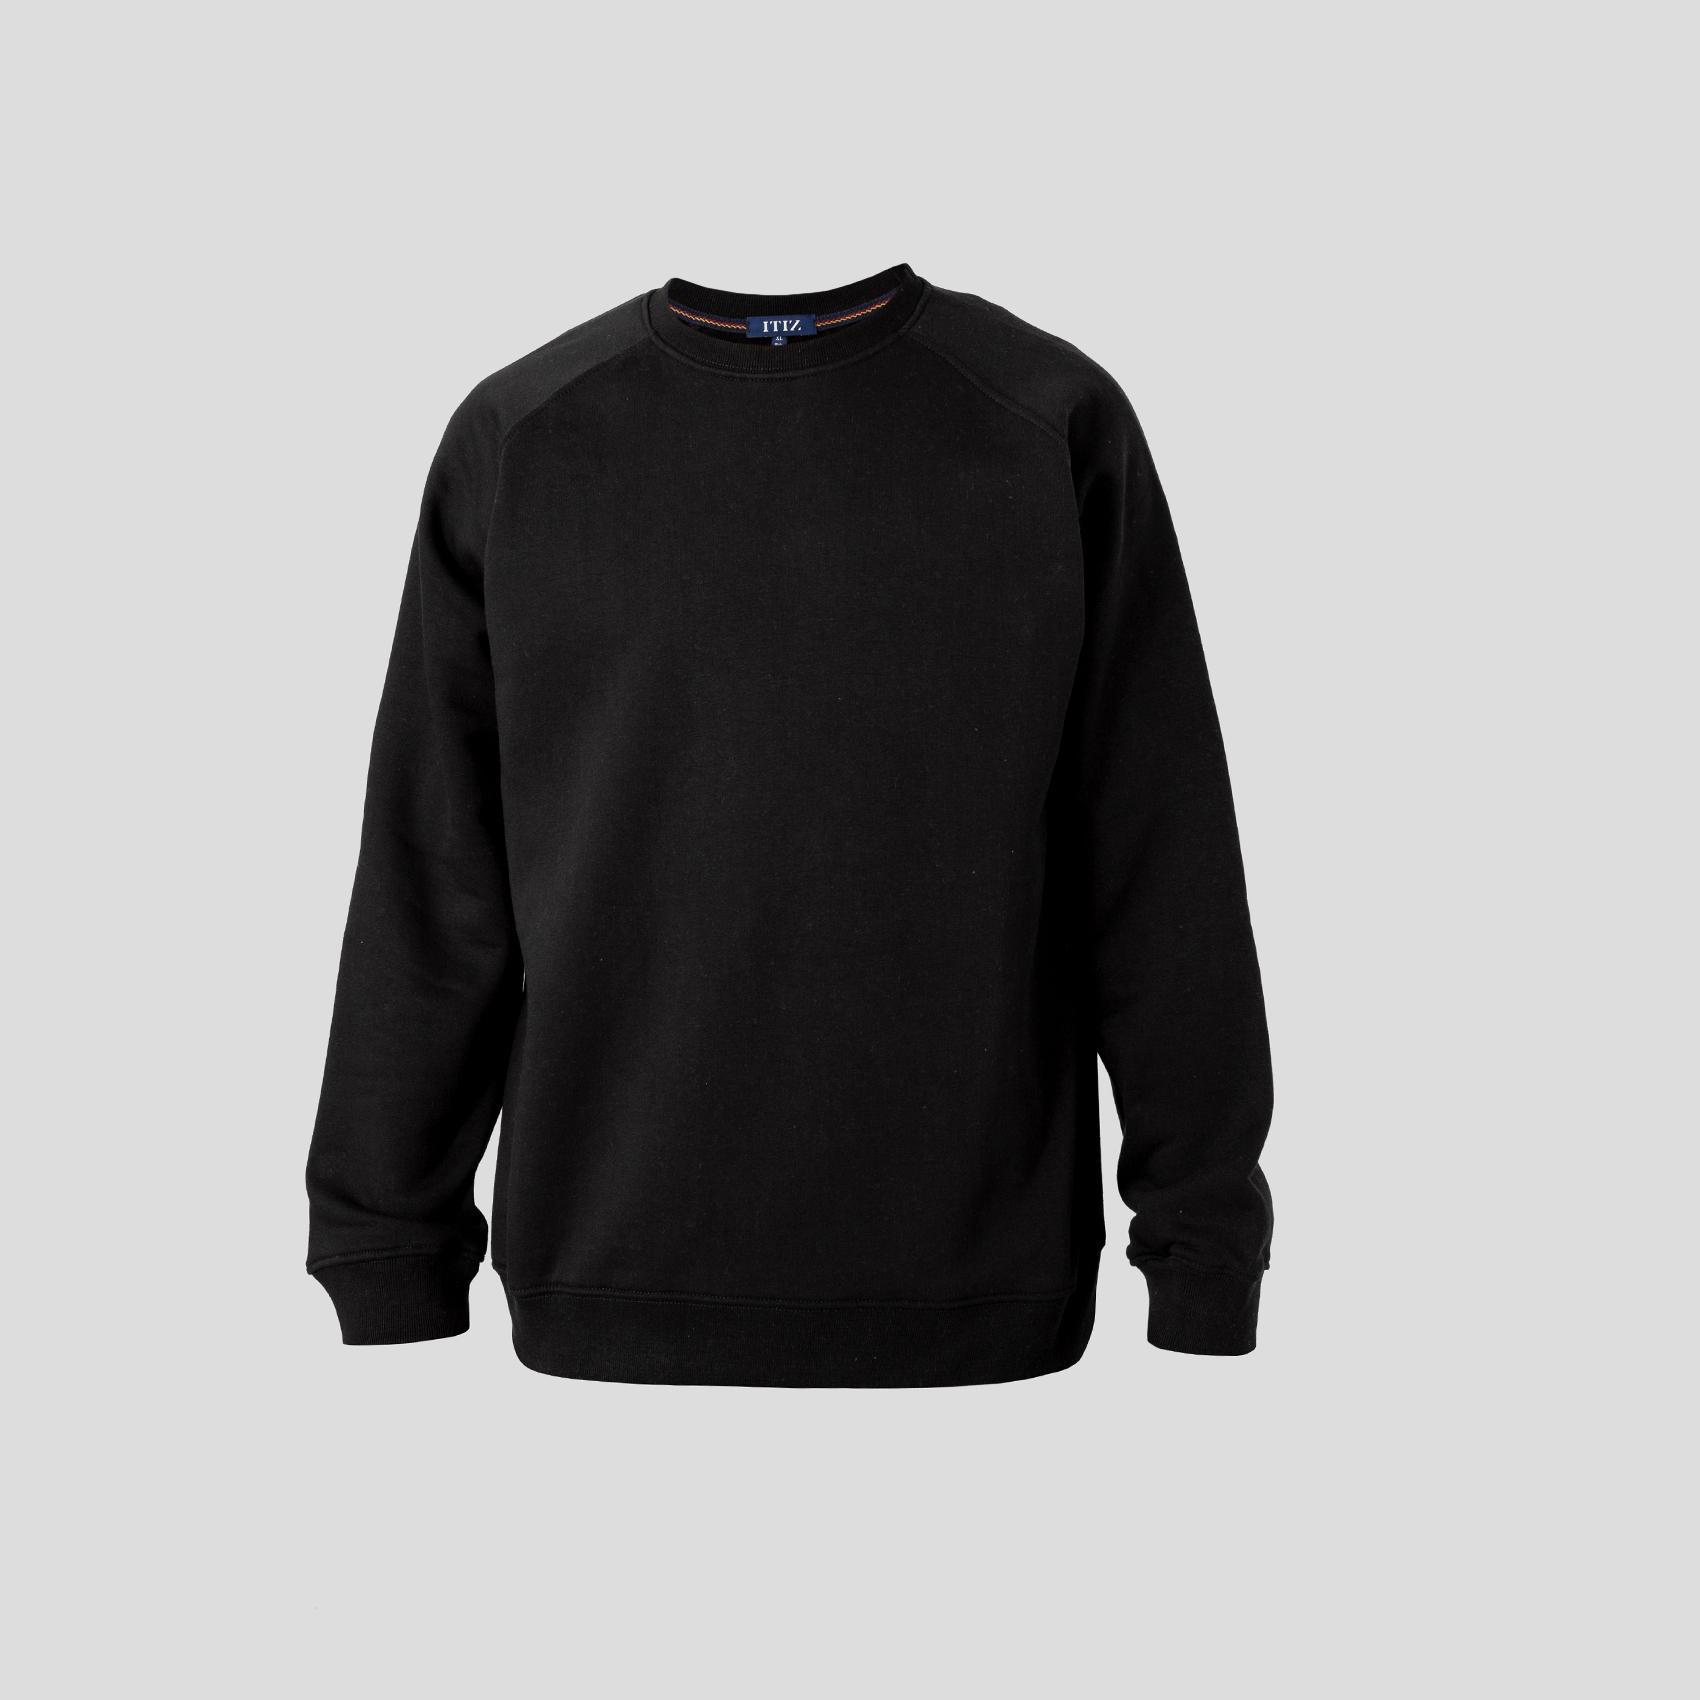 Picture of Men's black sweatshirt